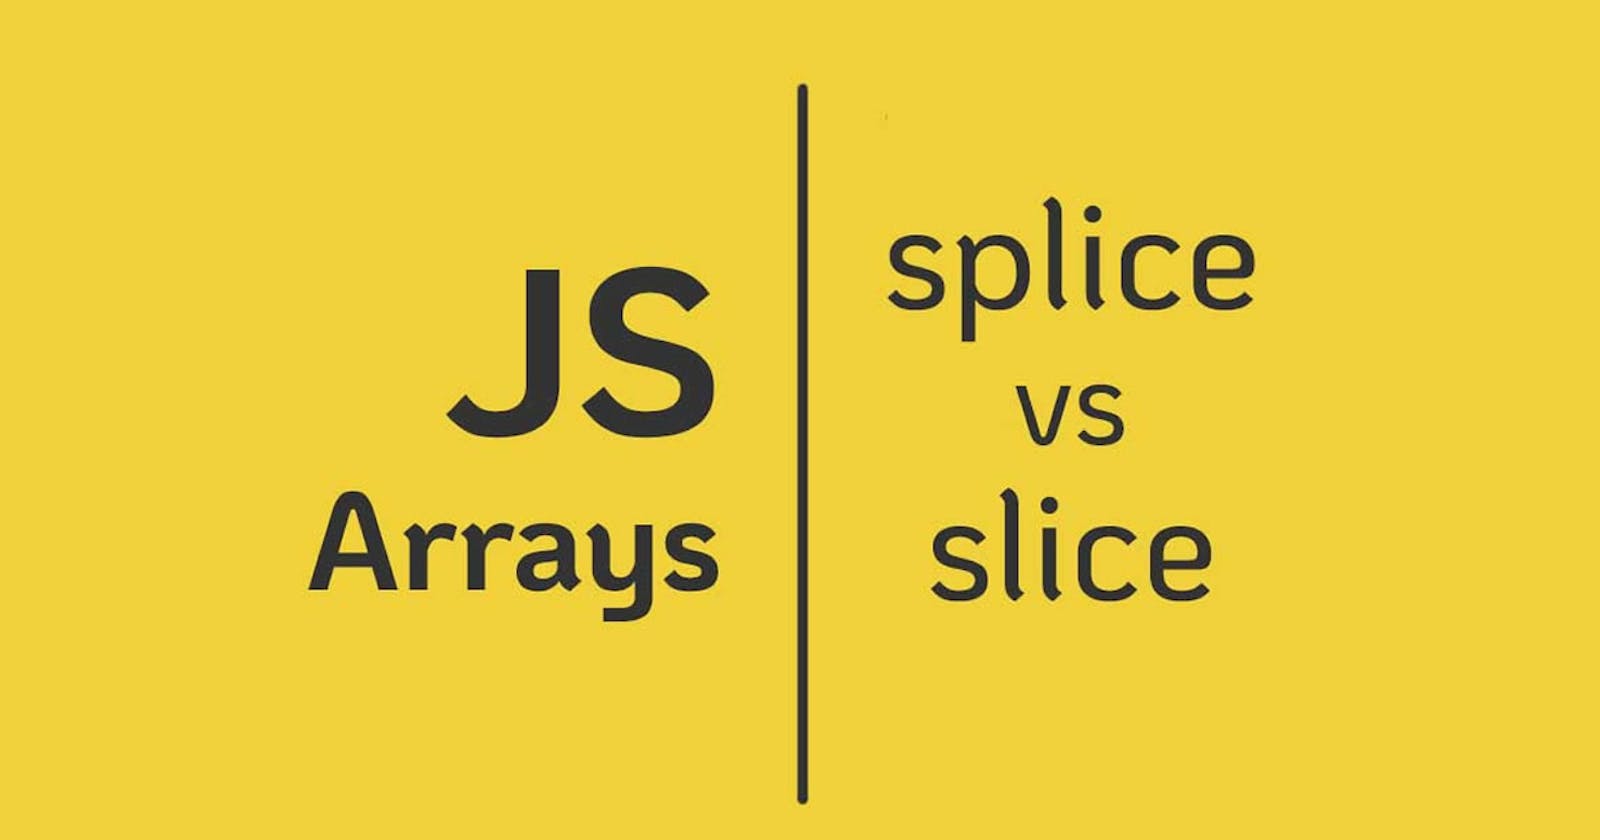 Slice vs Splice in Javascript